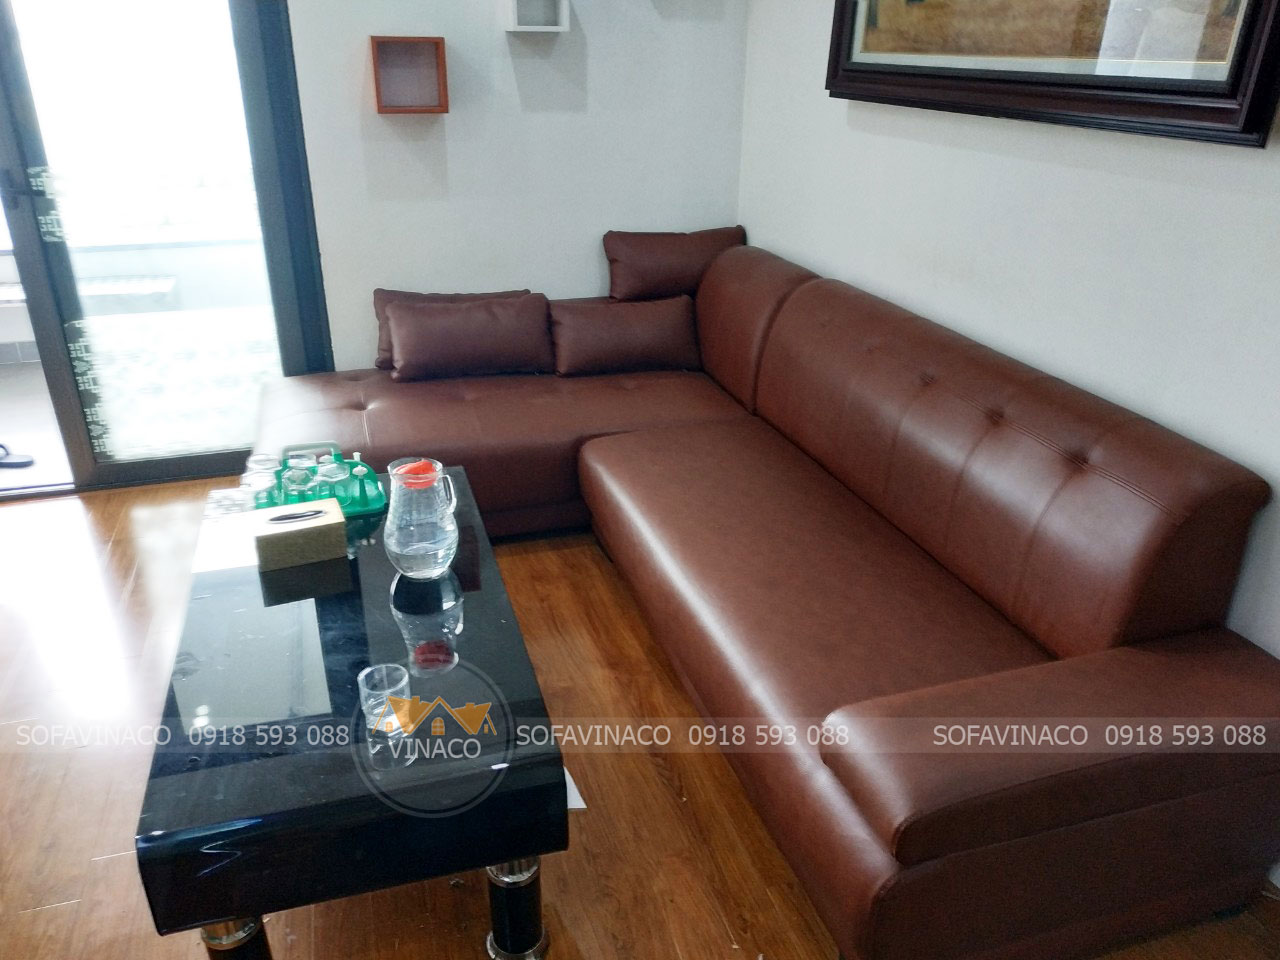 Bọc ghế sofa thành phố Thủ Đức giá rẻ tại nhà tốt nhất tại TPHCM